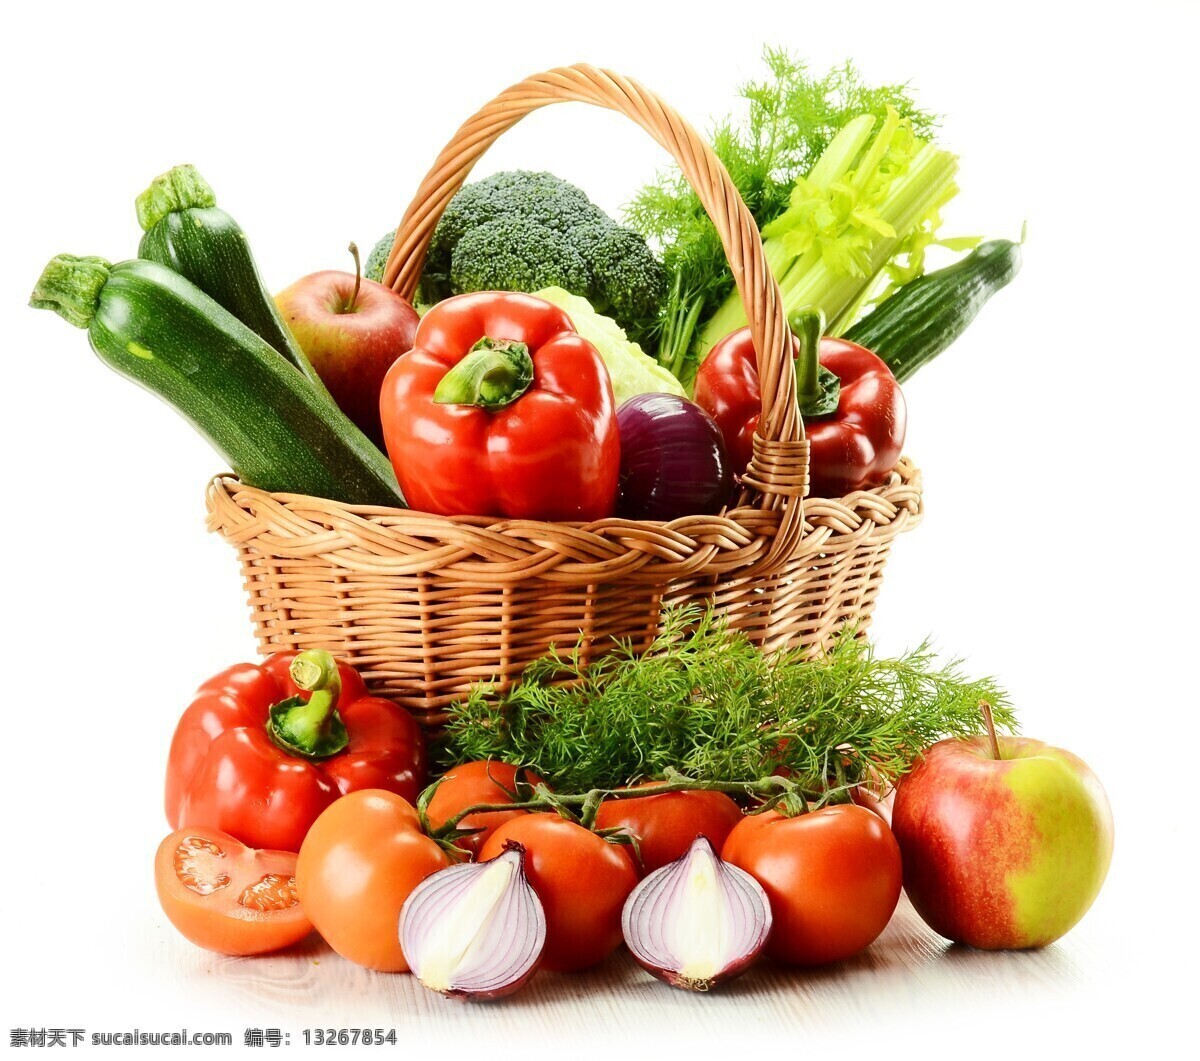 新鲜 水果 蔬菜 食物原材料 苹果 西红柿 南瓜 华彩 辣椒 洋葱 餐厅美食 水果图片 餐饮美食